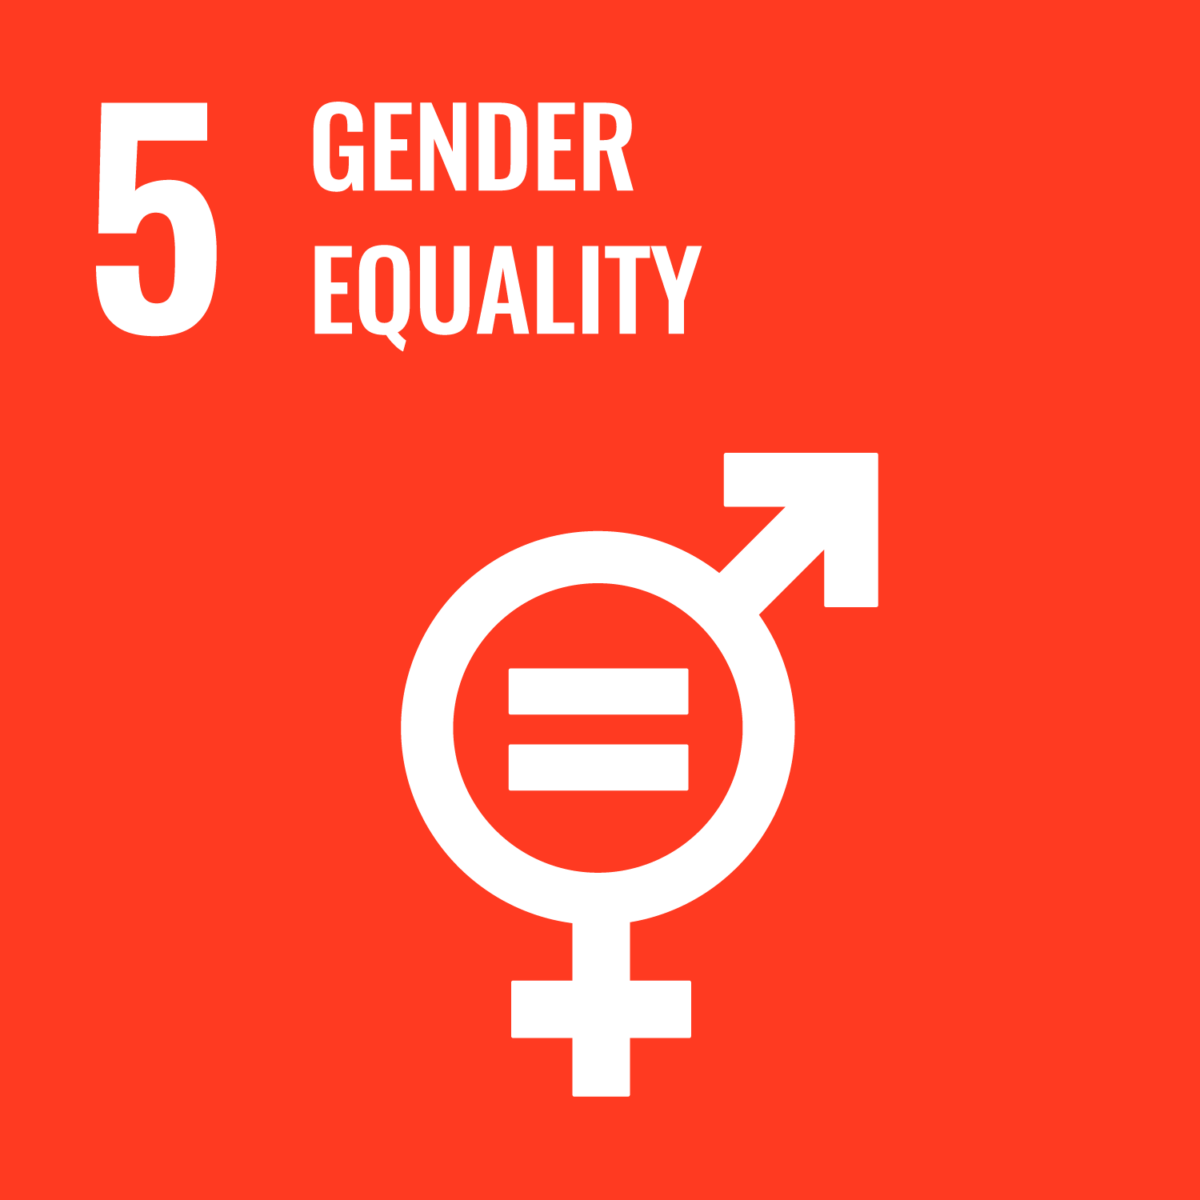 国連持続可能な開発目標5 ジェンダー平等を実現しようロゴマーク